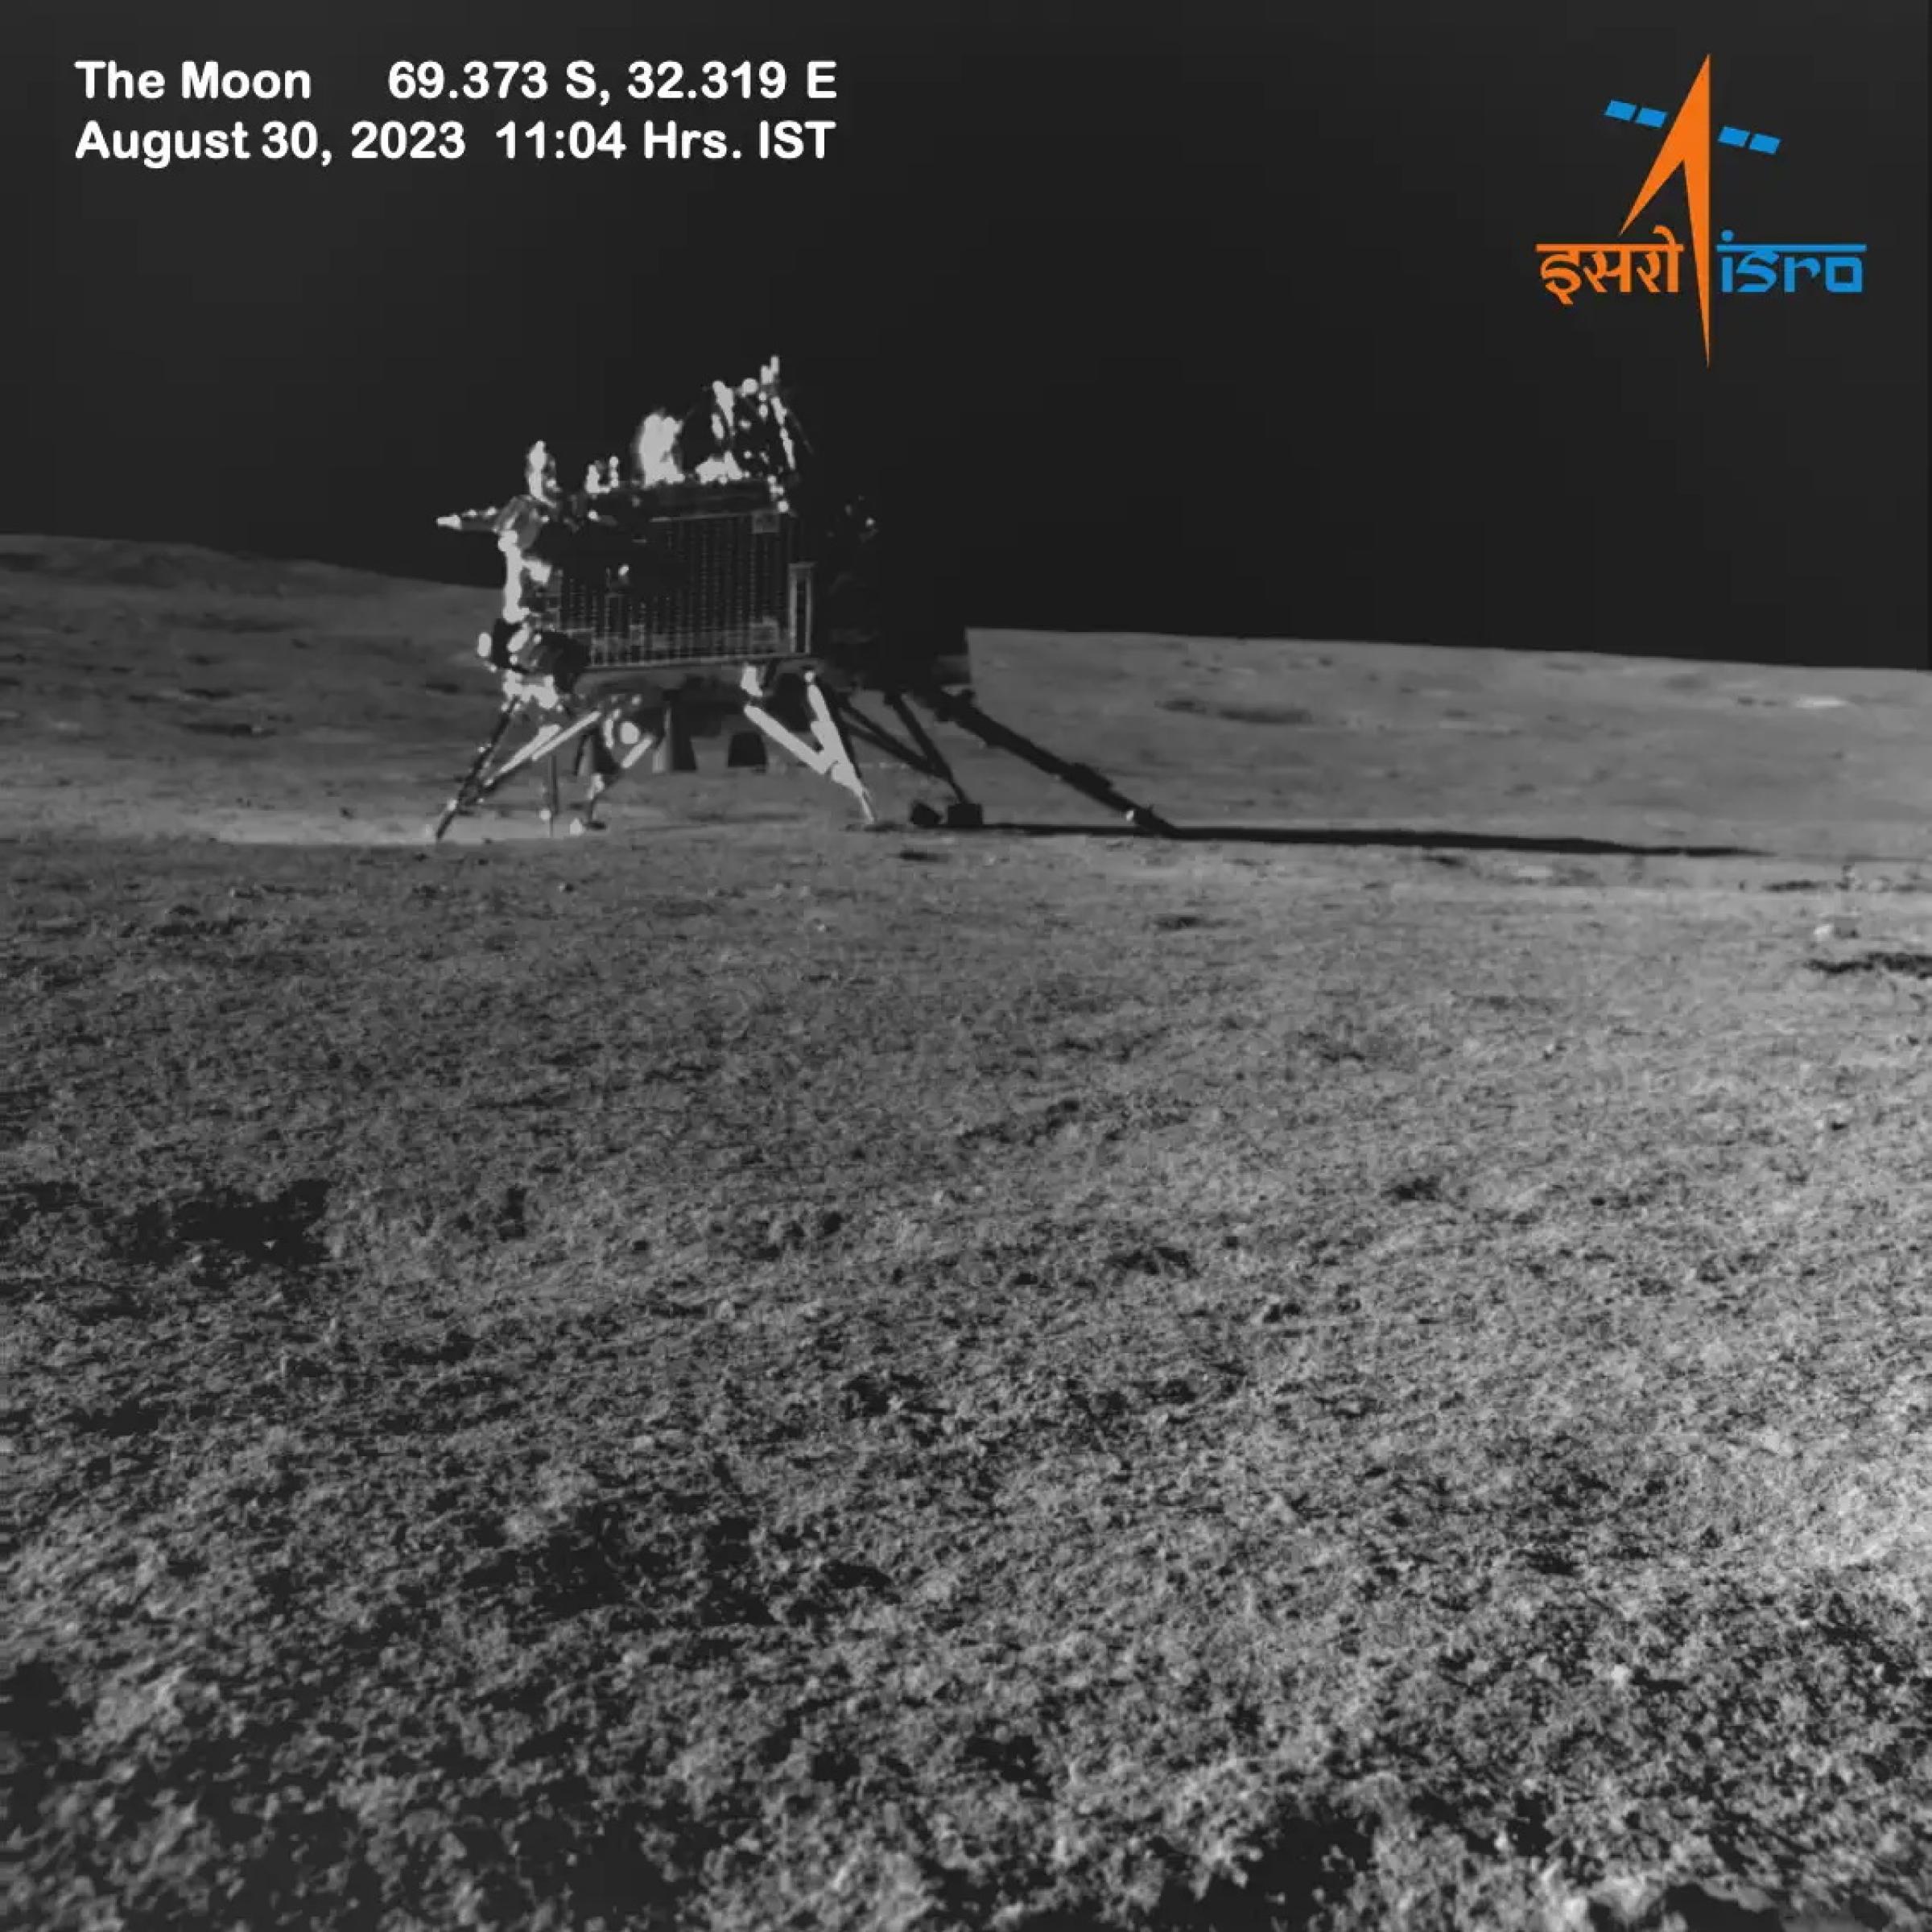 Czarno-białe zdjęcie przedstawia lądownik indyjskiej misji księżycowej Chandrayaan-3 na powierzchni Księżyca, sfotografowany przez łazik.